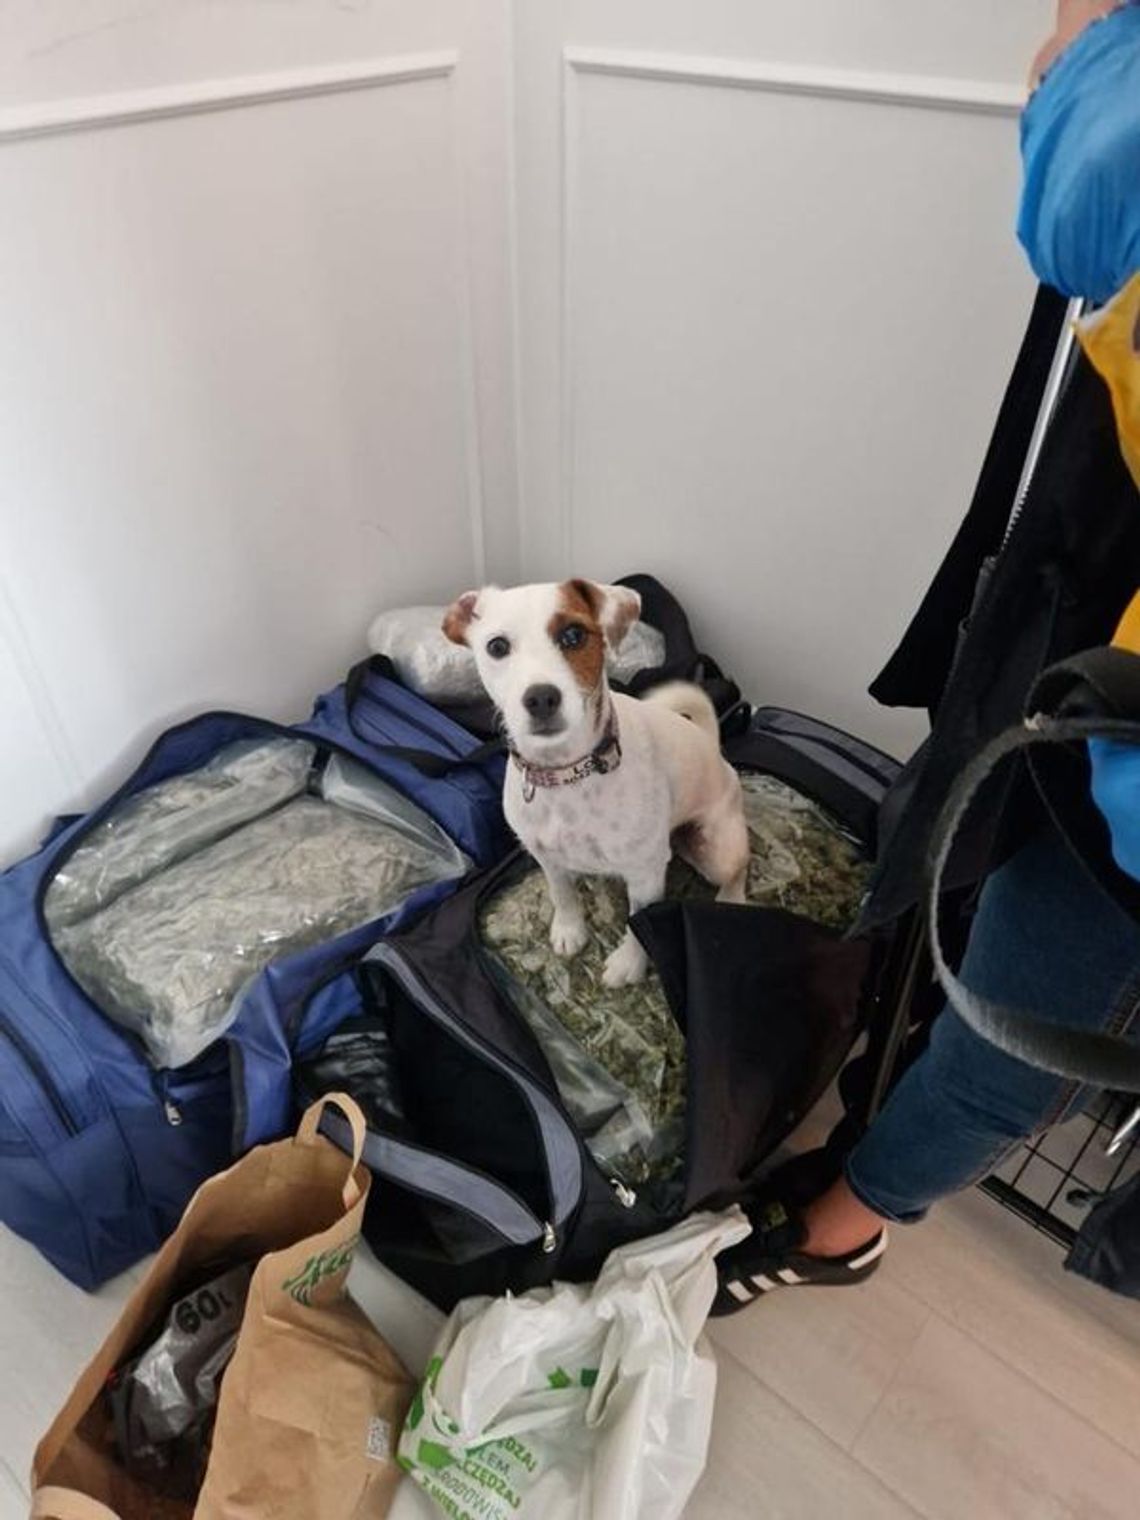 Wejherowo – Posiadali około 25 kilogramów narkotyków – zostali tymczasowo aresztowani na okres 3 miesięcy, pies Lola do wykrywania narkotyków